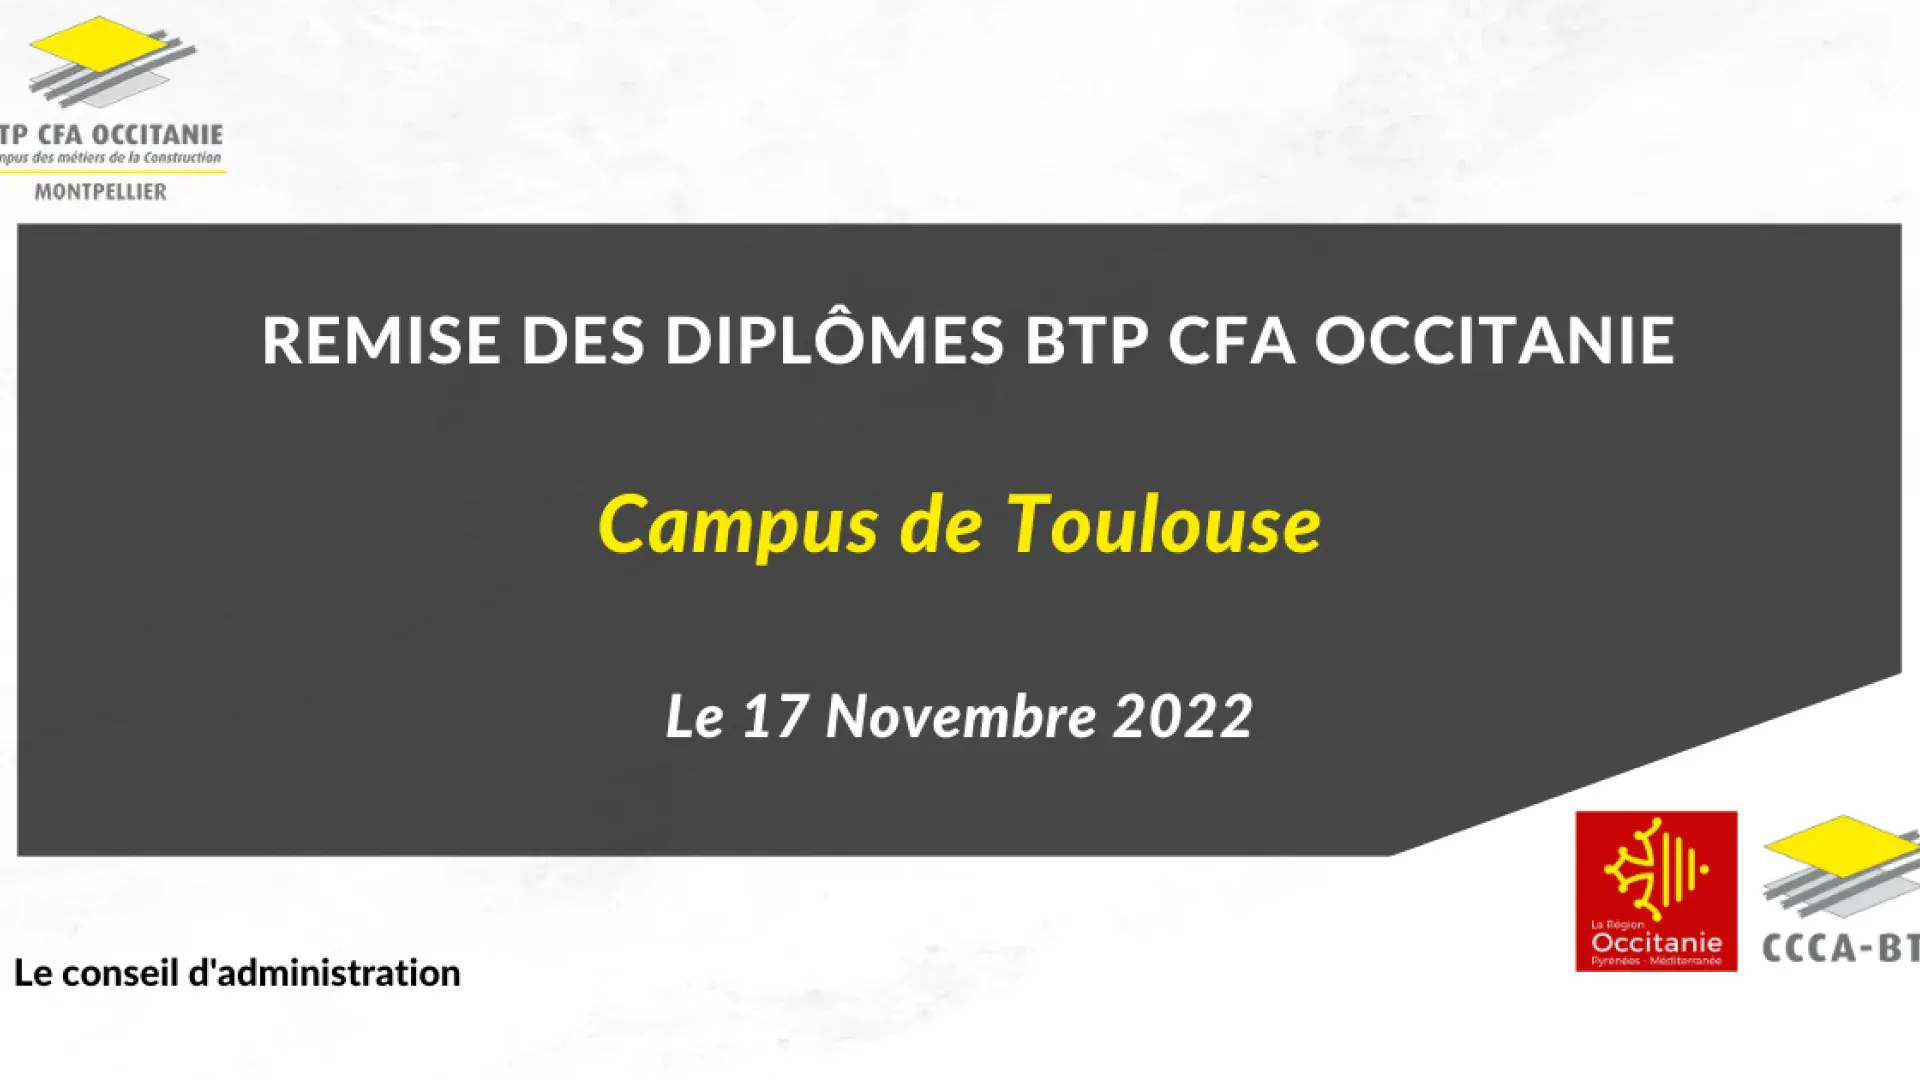 Remise des diplômes BTP CFA Occitanie campus de Toulouse